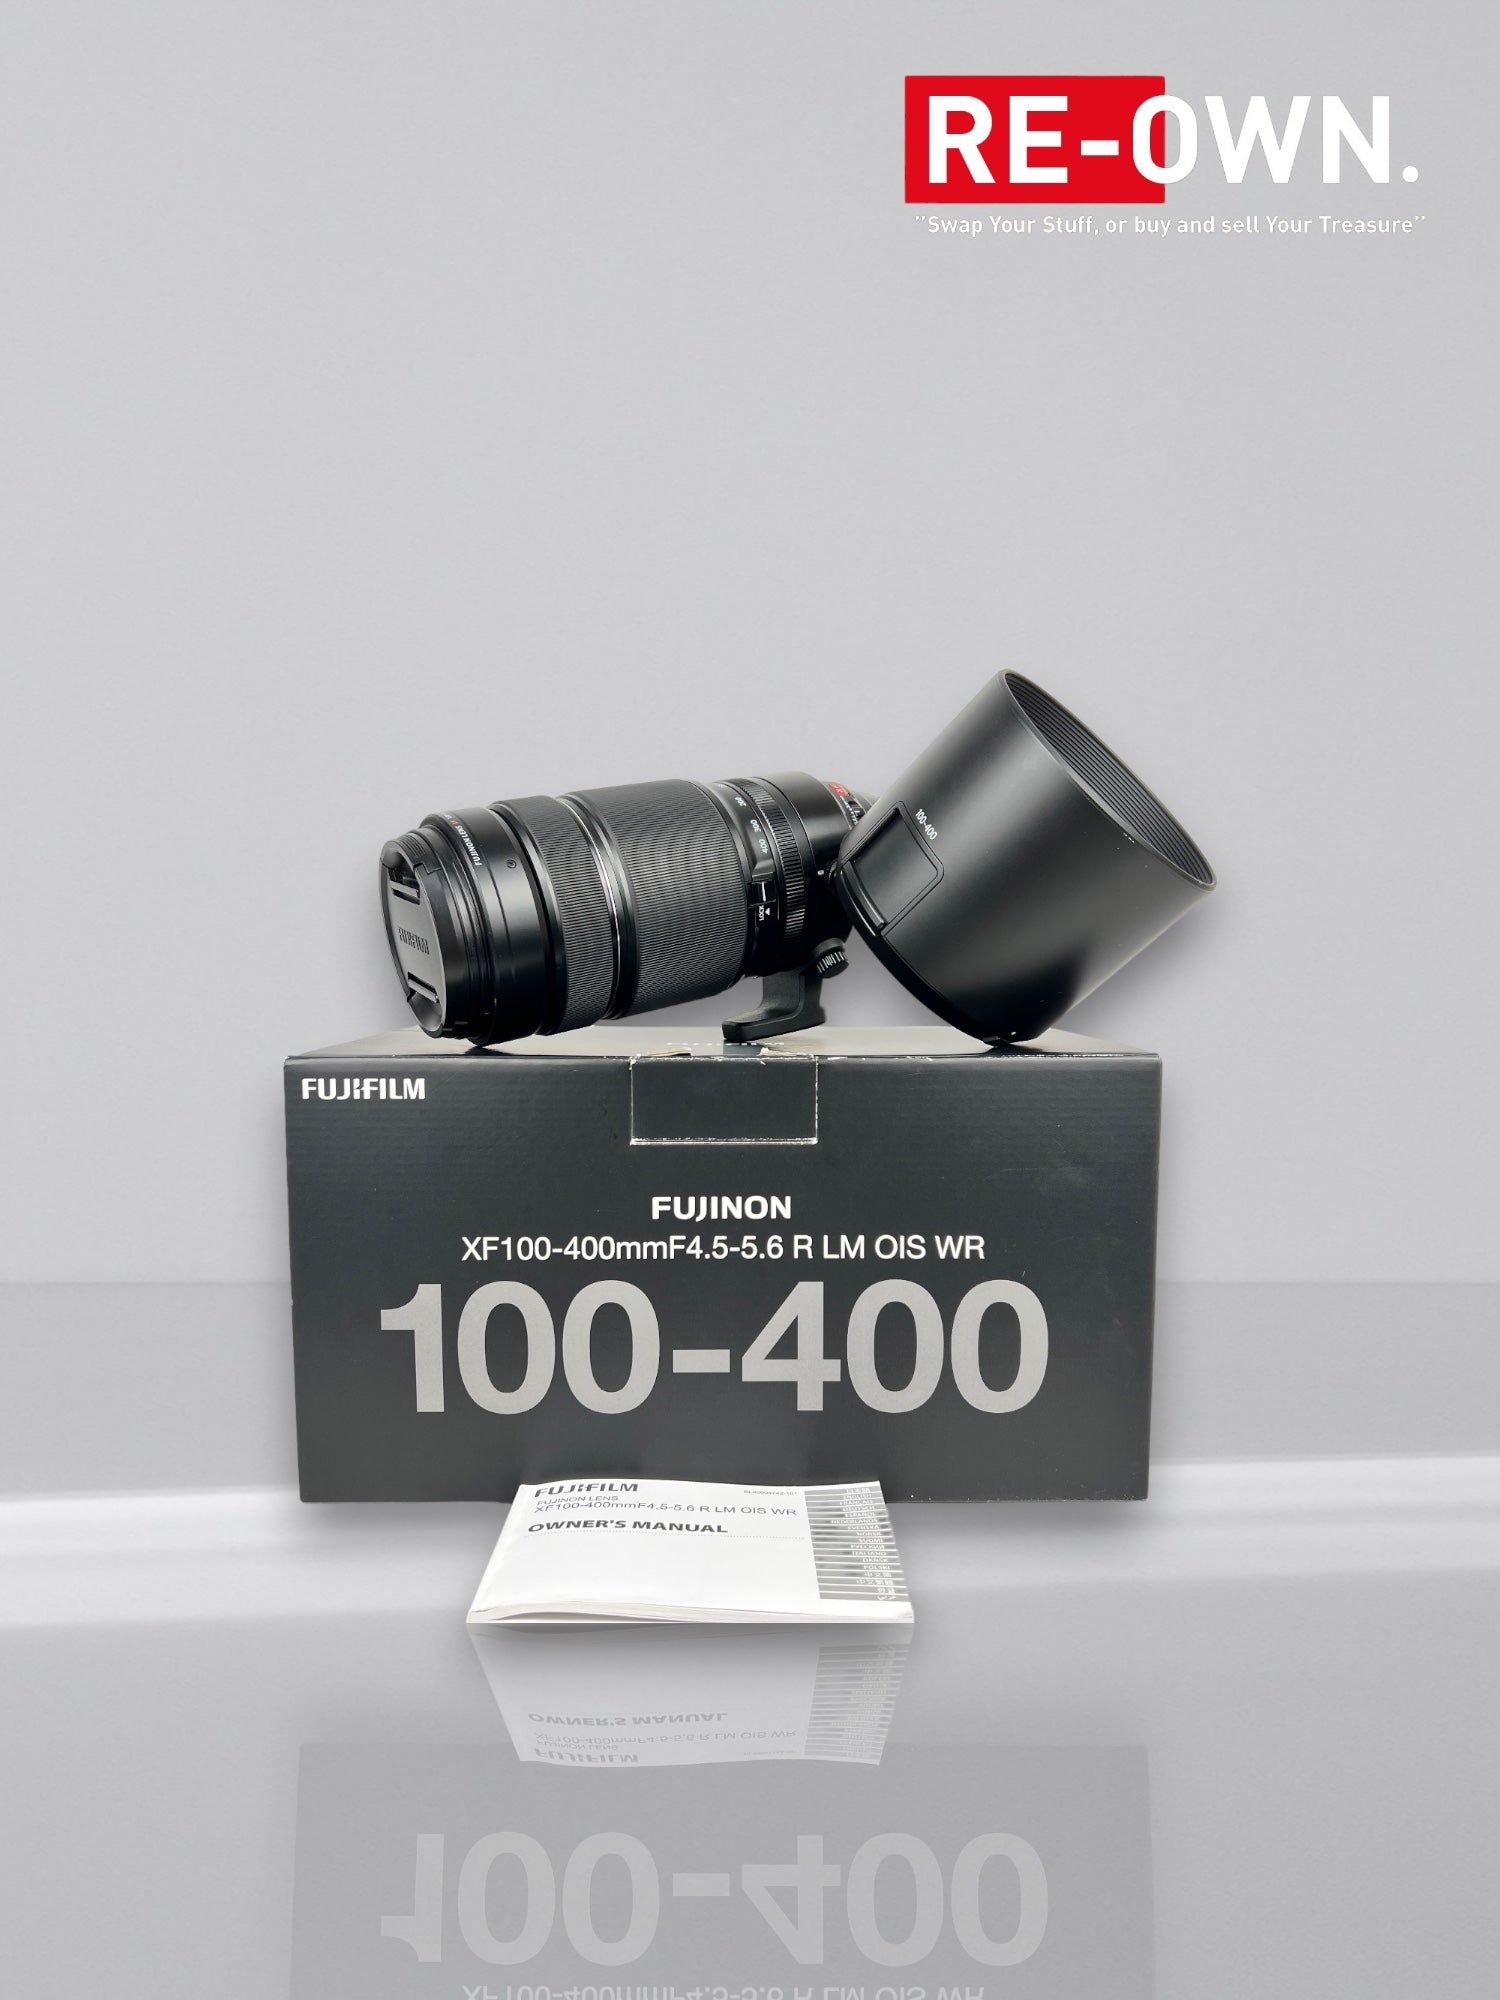 Fujifilm XF 100-400mm f/4.5-5.6 R LM OIS WR / Fuji